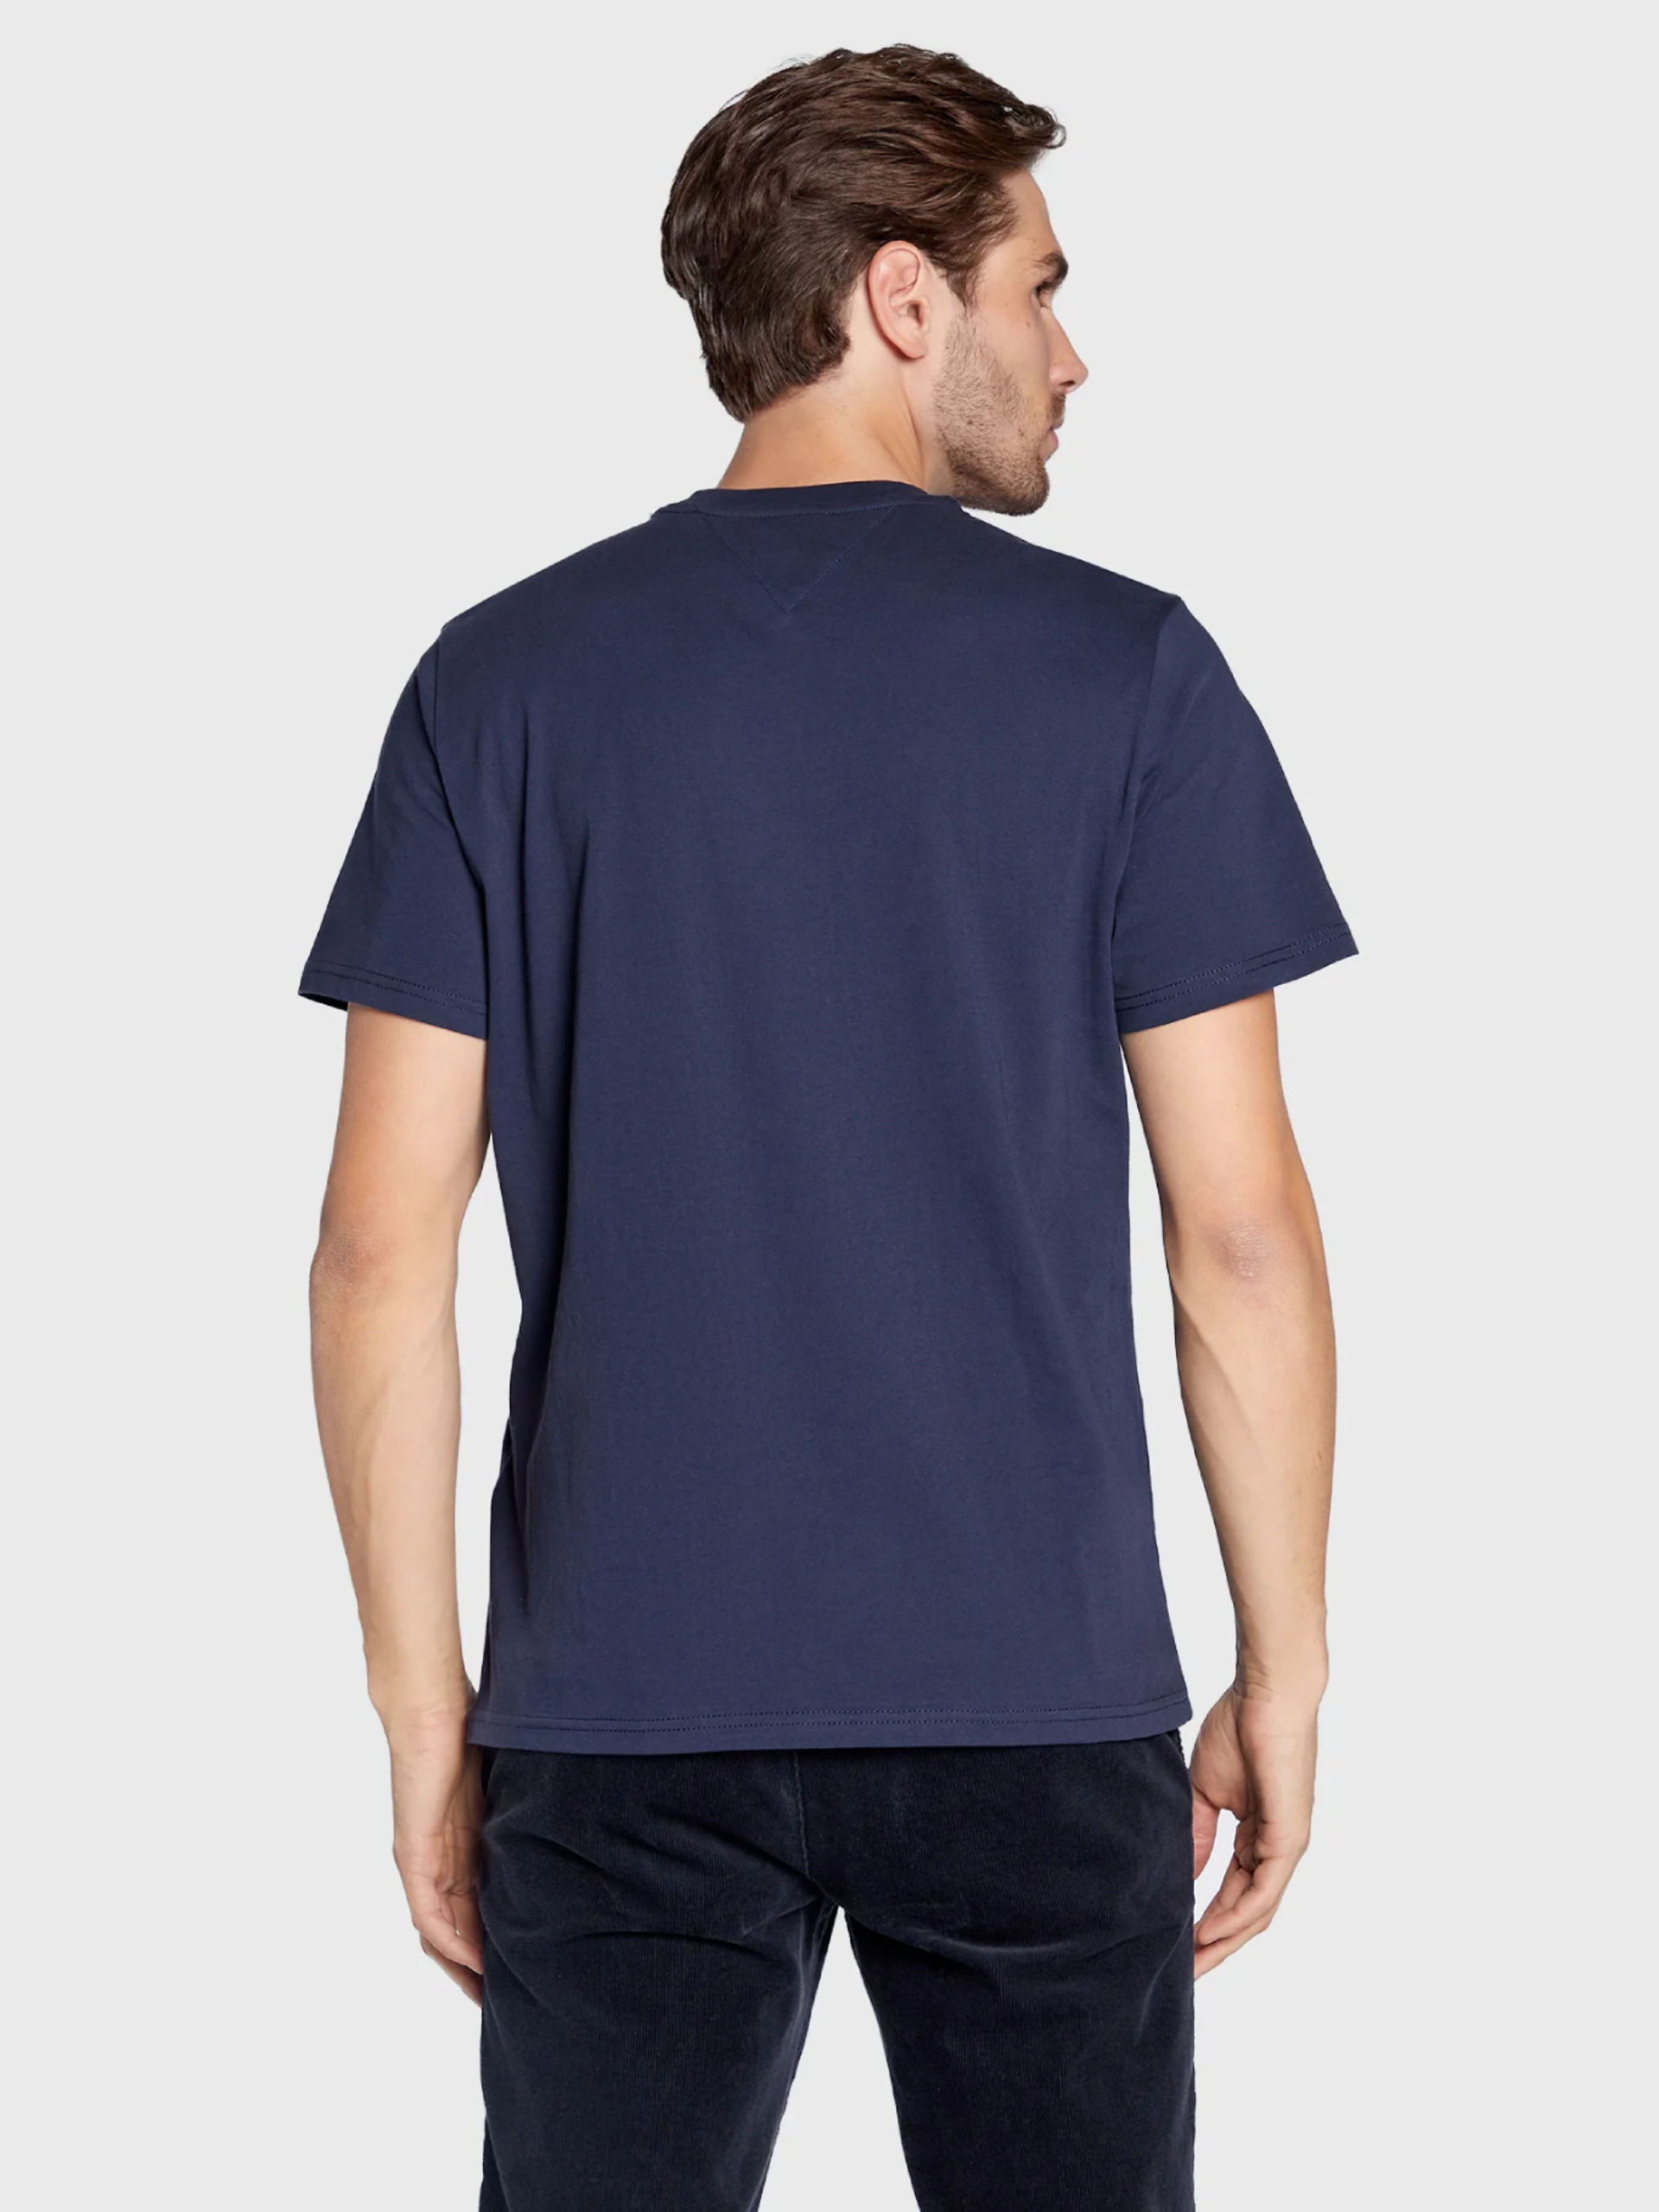 Tommy Jeans pánské modré tričko ENTRY VERTICLE - S (C87)